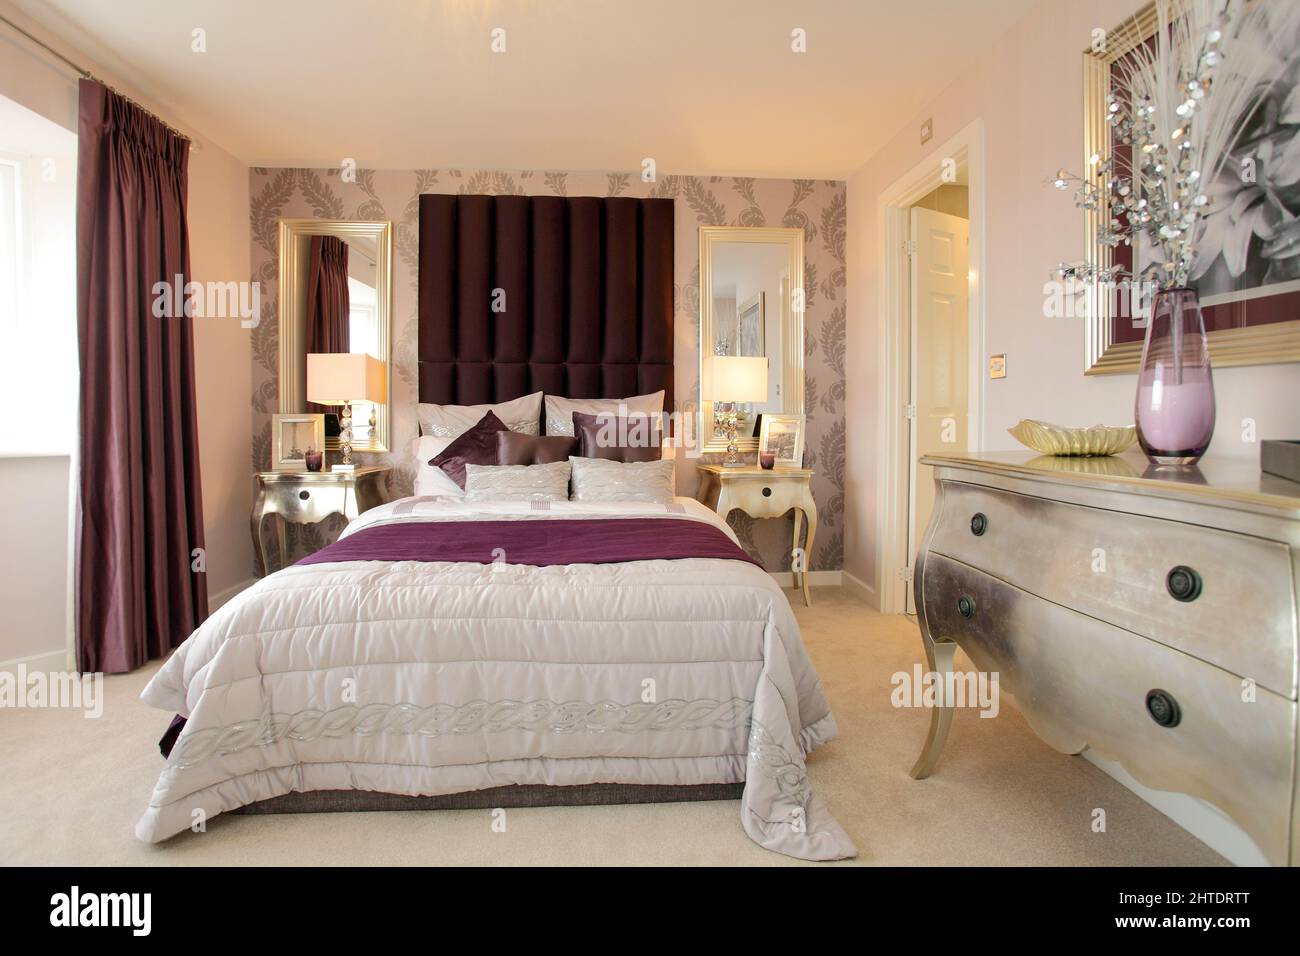 Chambre moderne dans une nouvelle maison, couvre-lit, violet bordeaux rouge foncé, grande tête de lit rembourrée, coiffeuse argentée. Banque D'Images